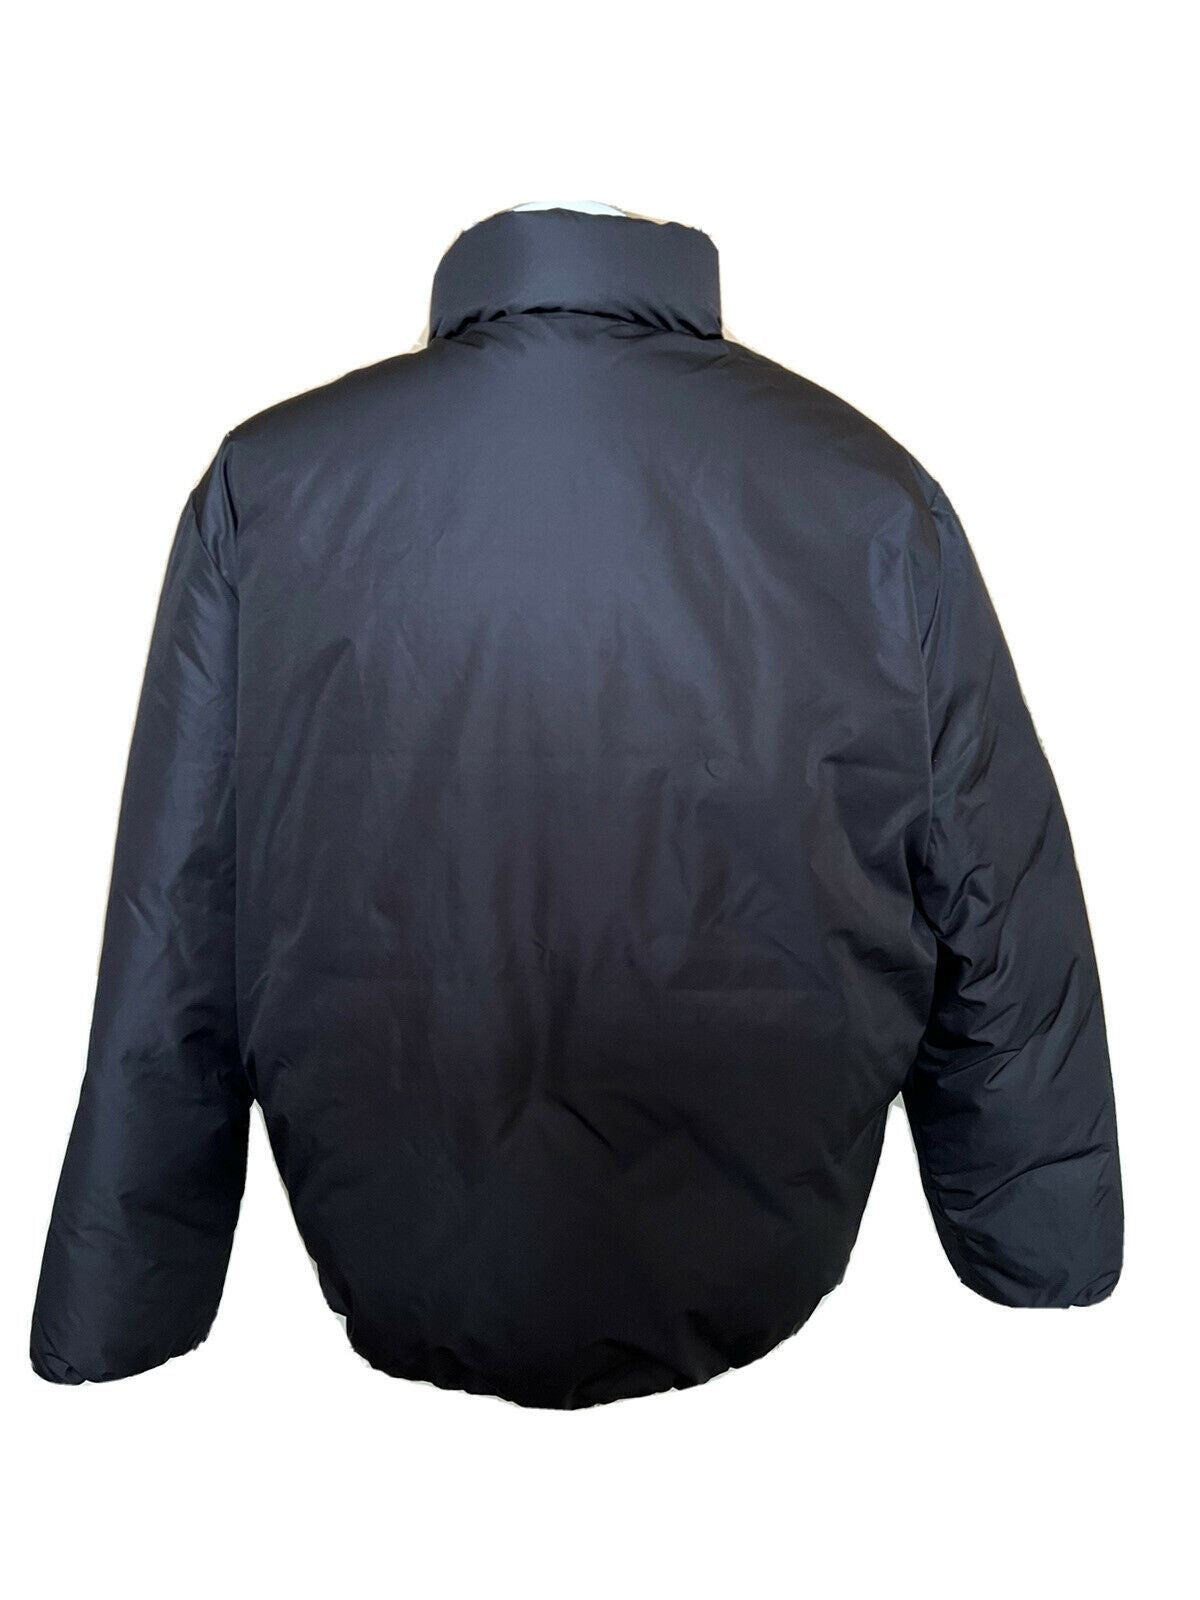 NWT $498 Polo Ralph Lauren Alpine Men's Black Parka Jacket Large